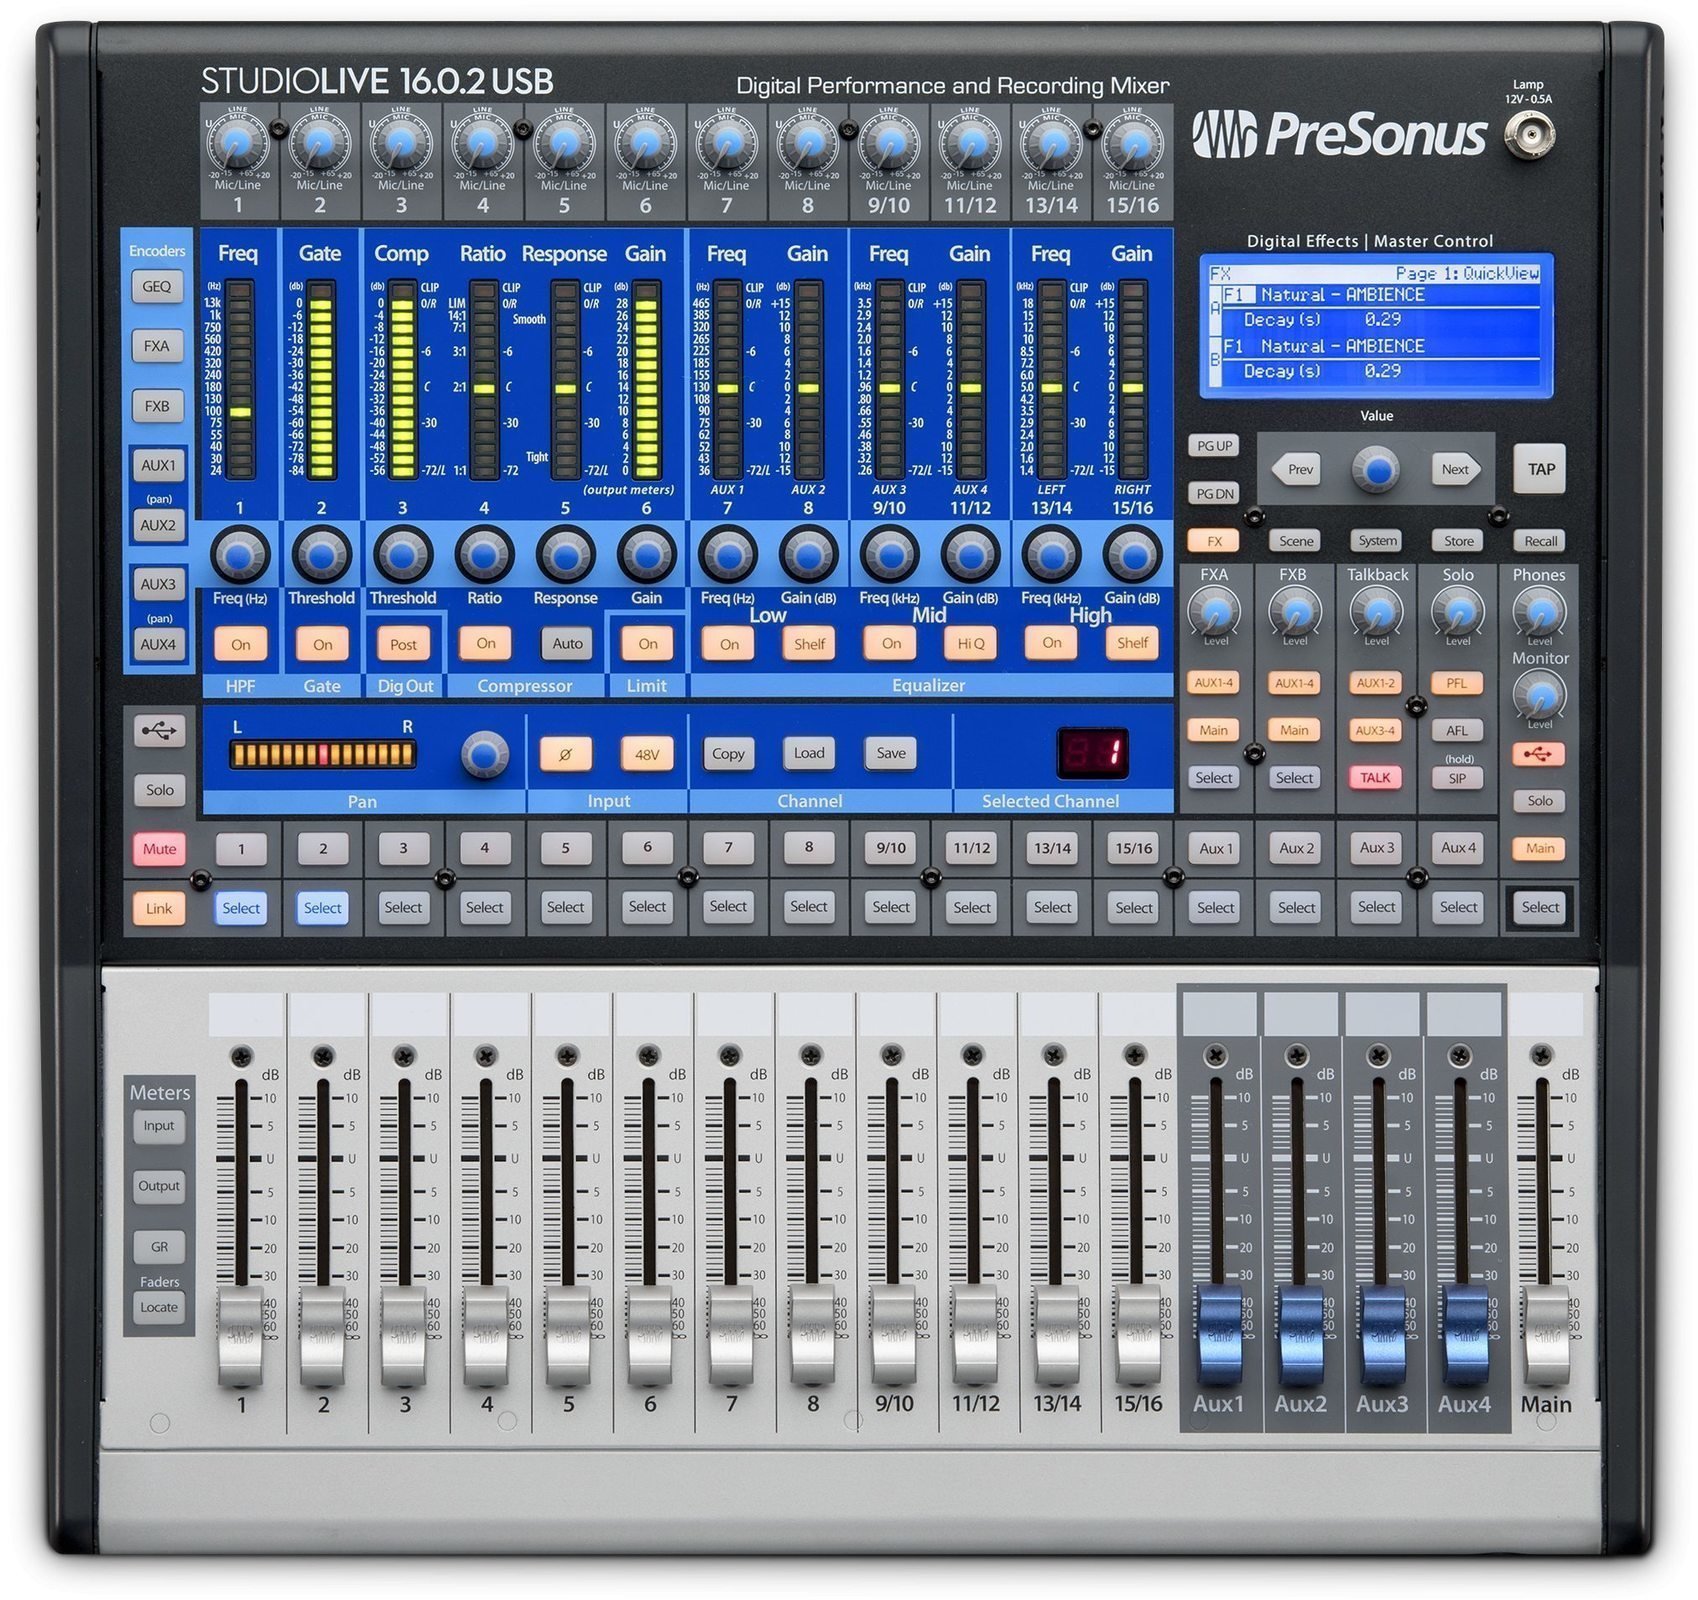 Presonus StudioLive 16.0.2 USB Mixer digital